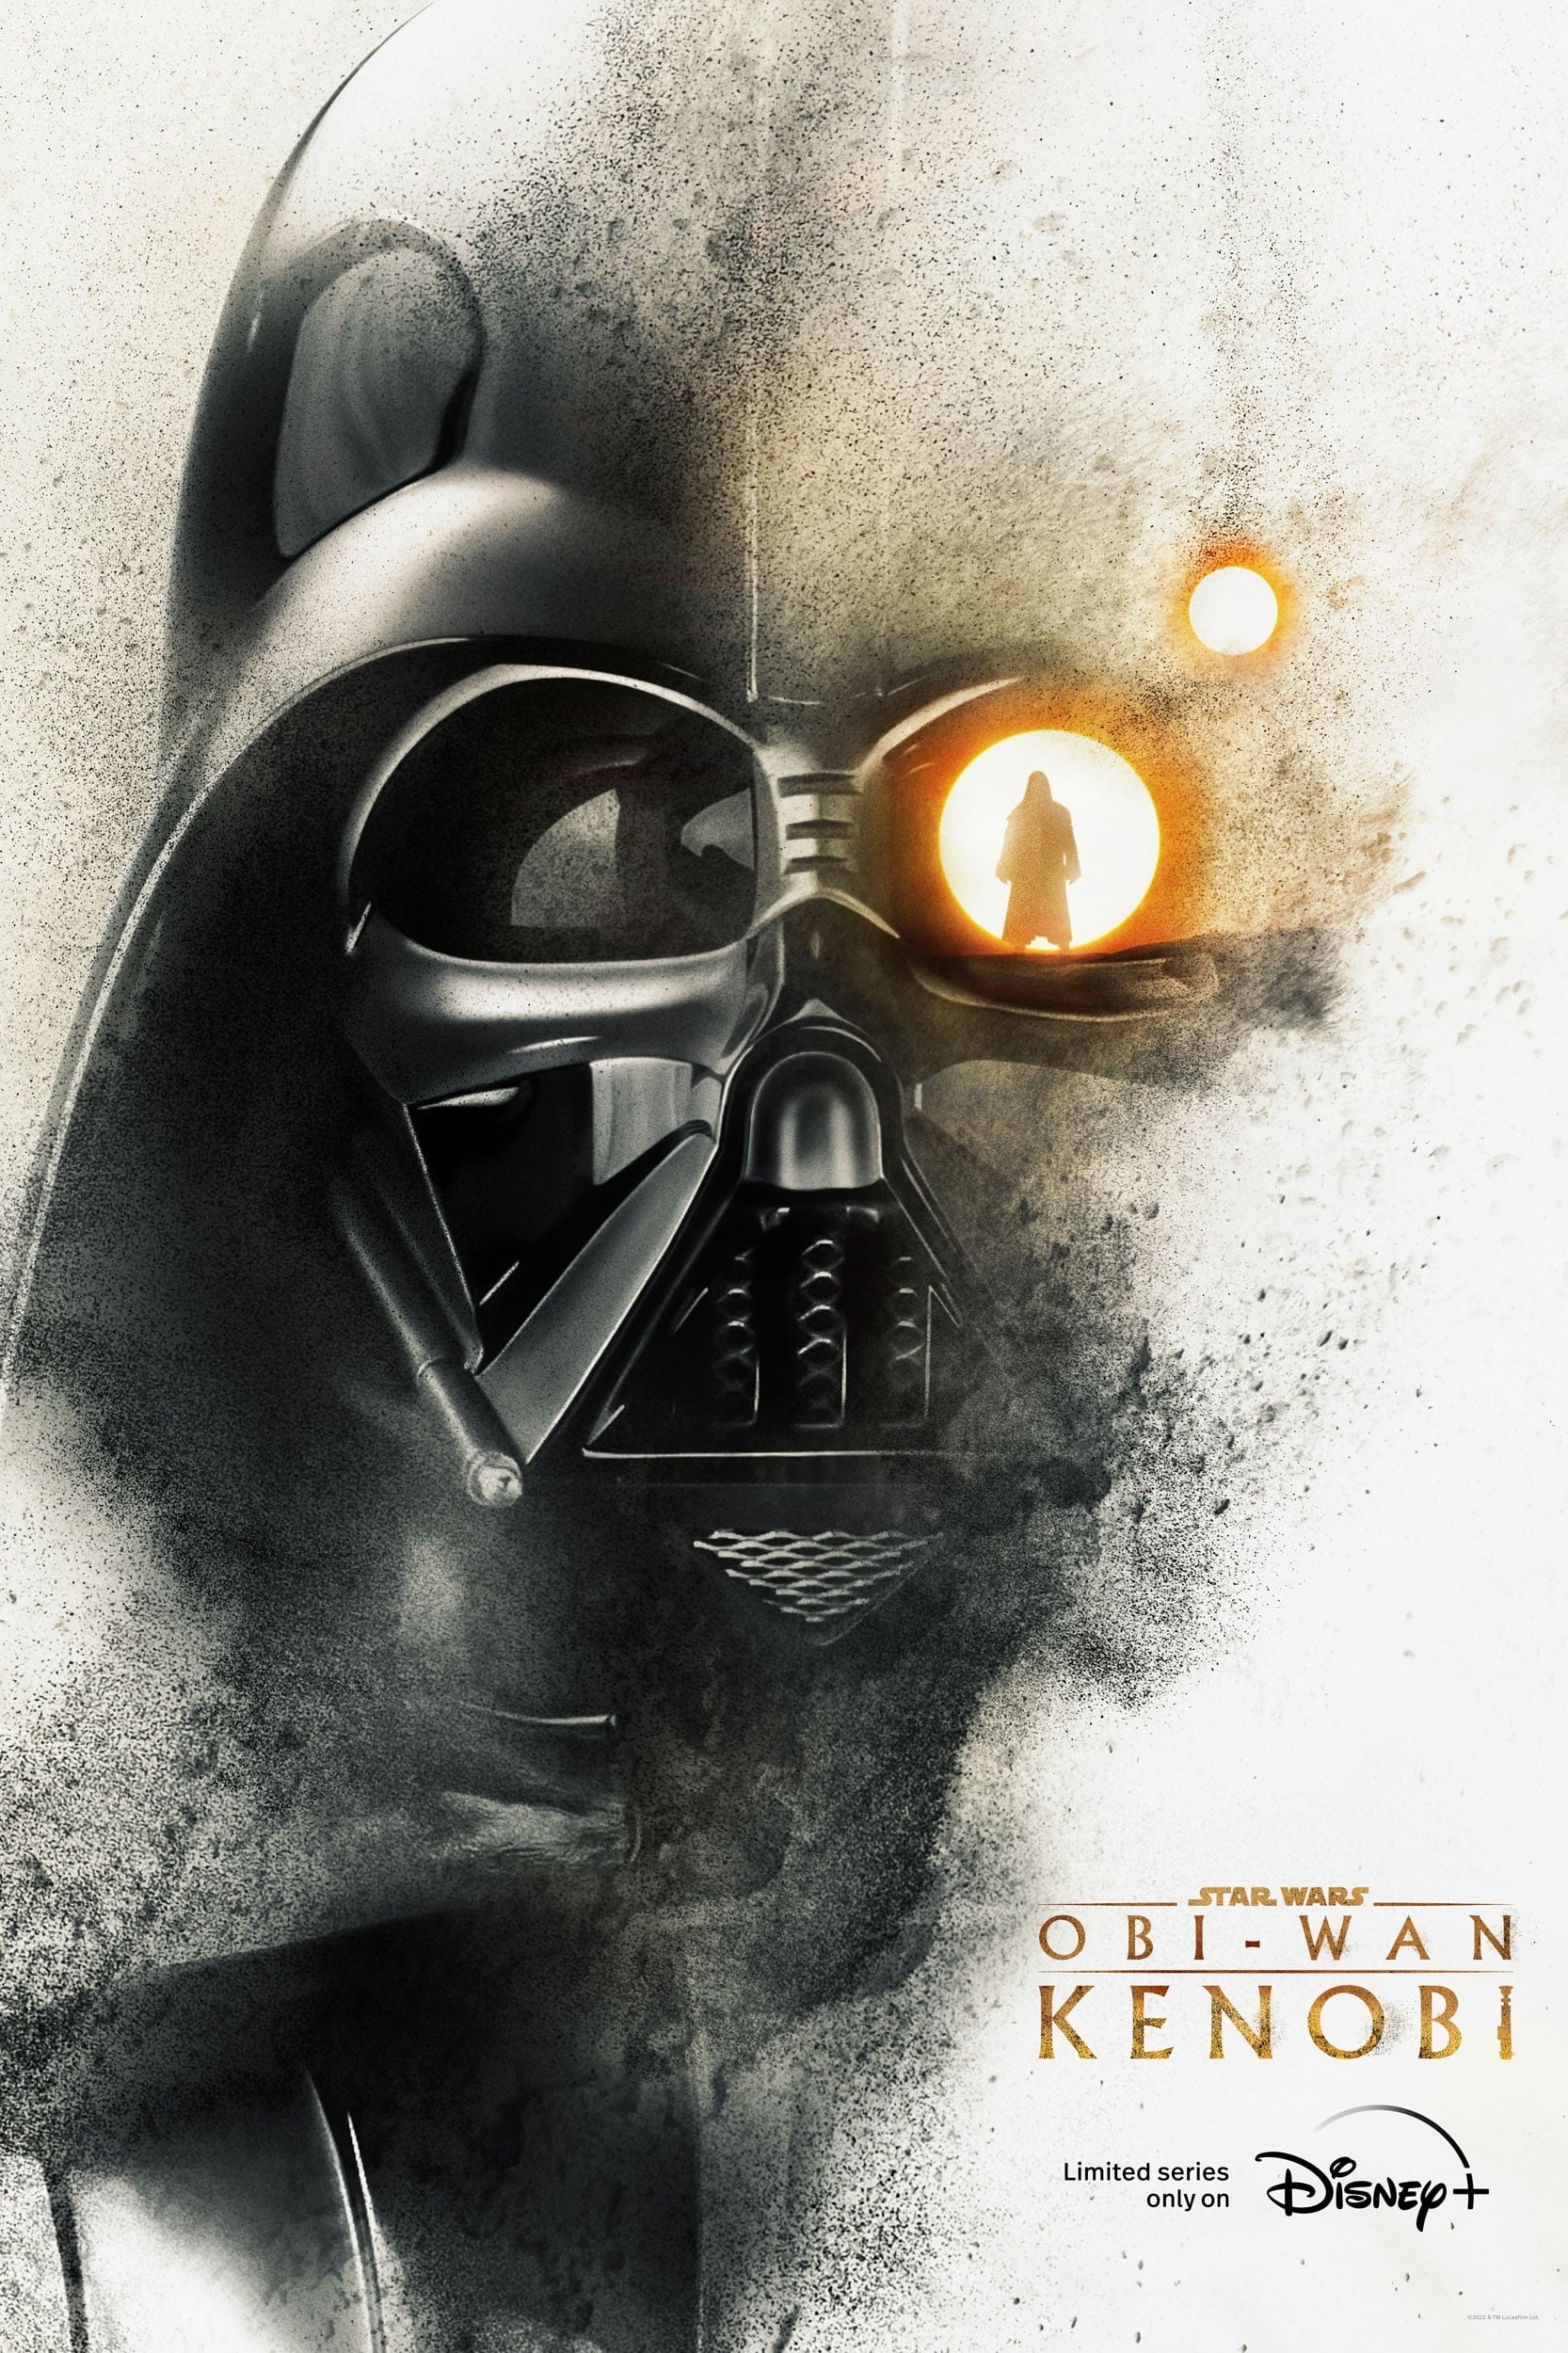 Mega Sized TV Poster Image for Obi-Wan Kenobi (#9 of 15)